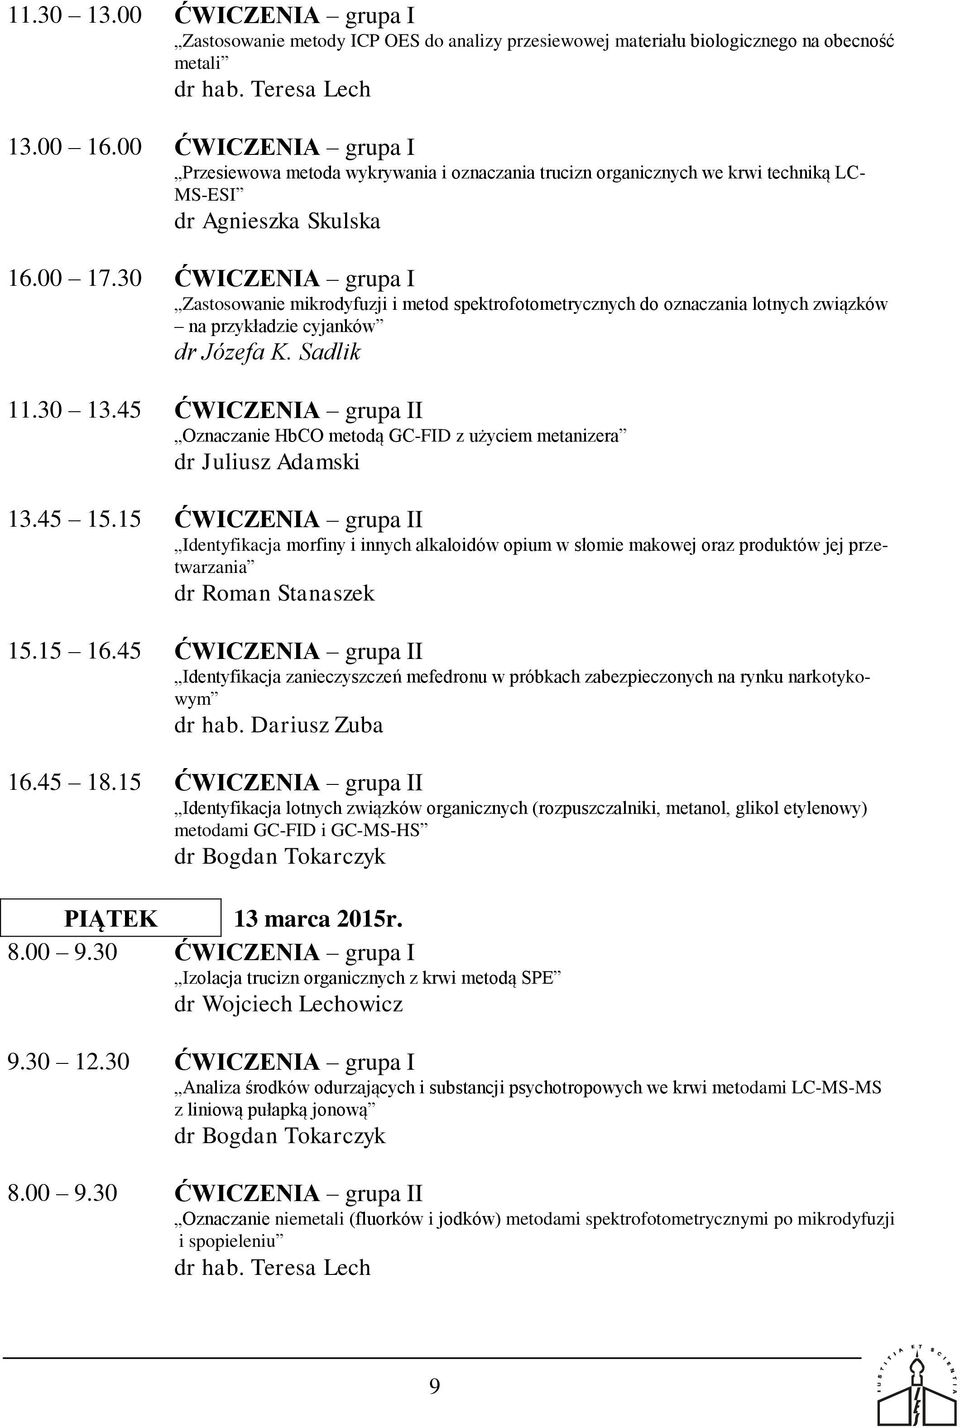 30 ĆWICZENIA grupa I Zastosowanie mikrodyfuzji i metod spektrofotometrycznych do oznaczania lotnych związków na przykładzie cyjanków 11.30 13.